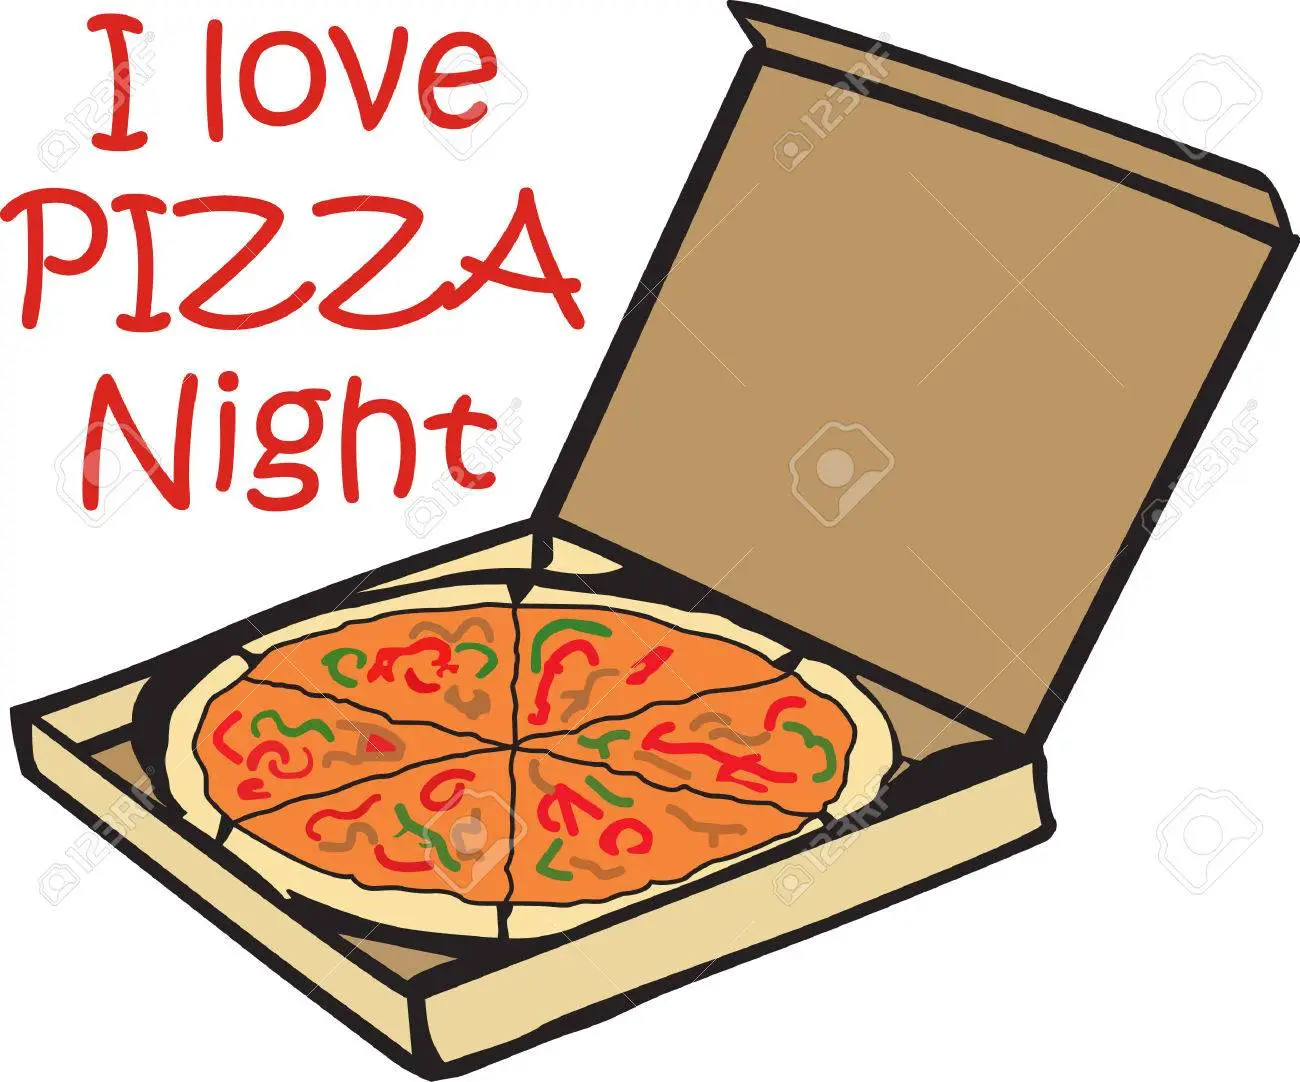 Pizza Night October 20!